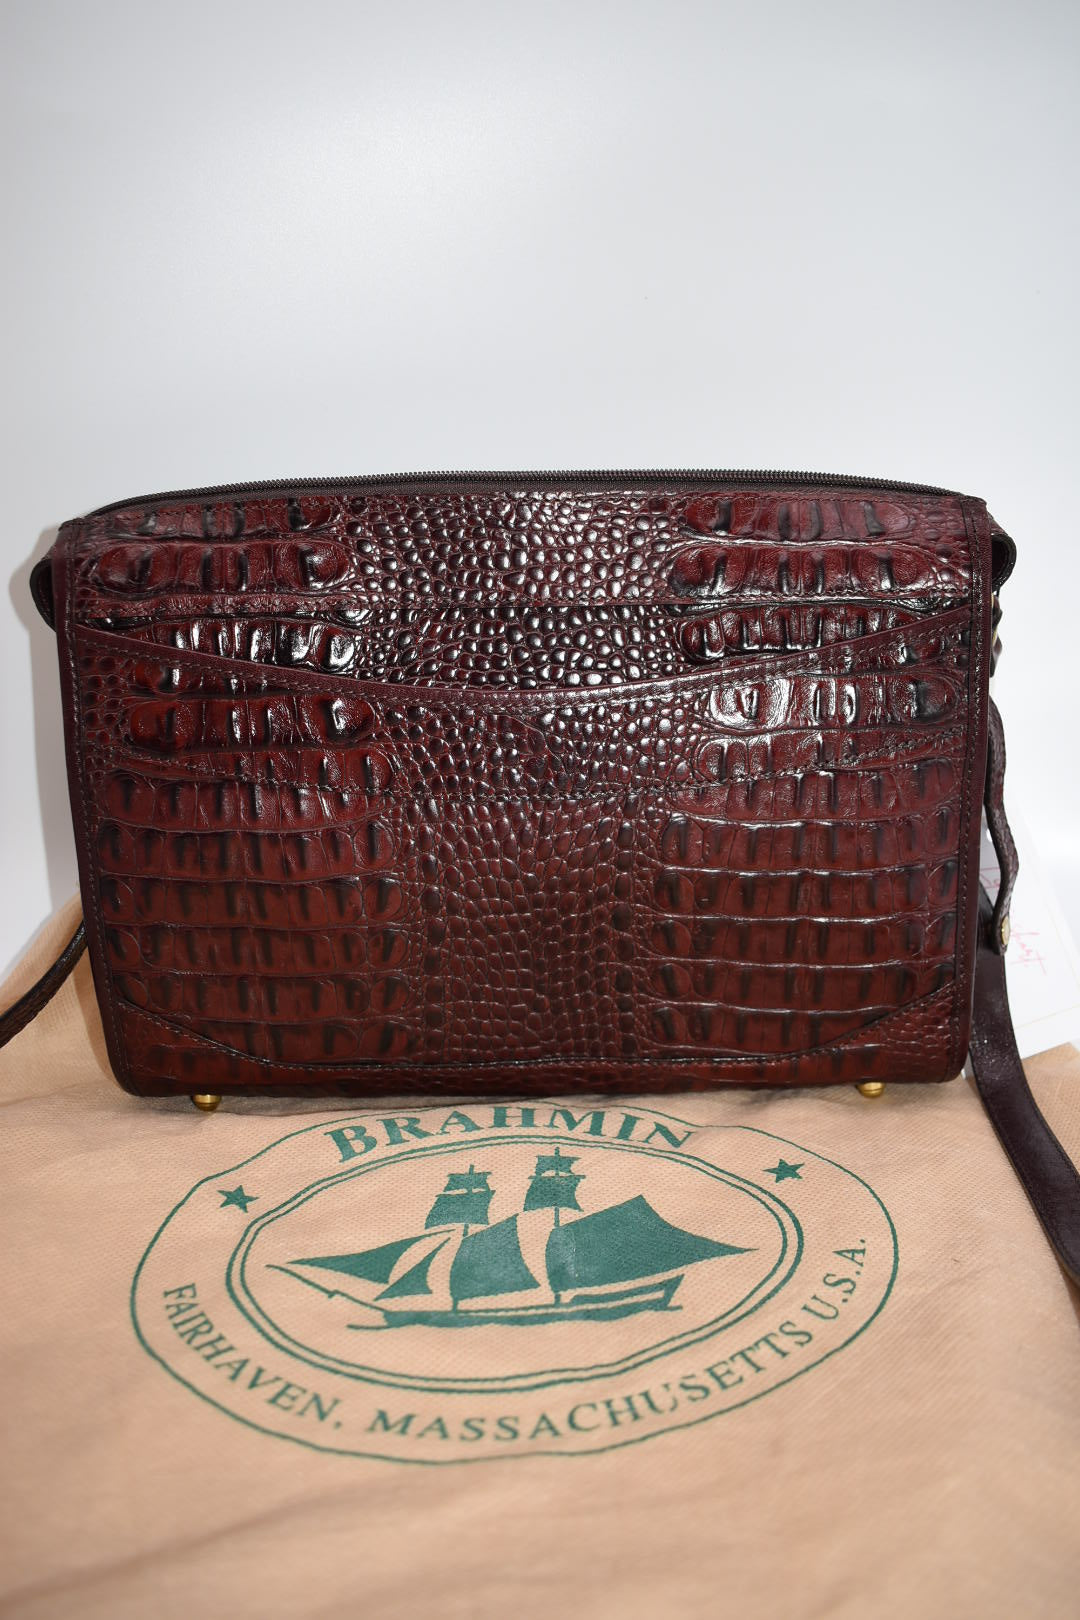 Brahmin Baby Basic Crossbody Bag in Merlot Whitney